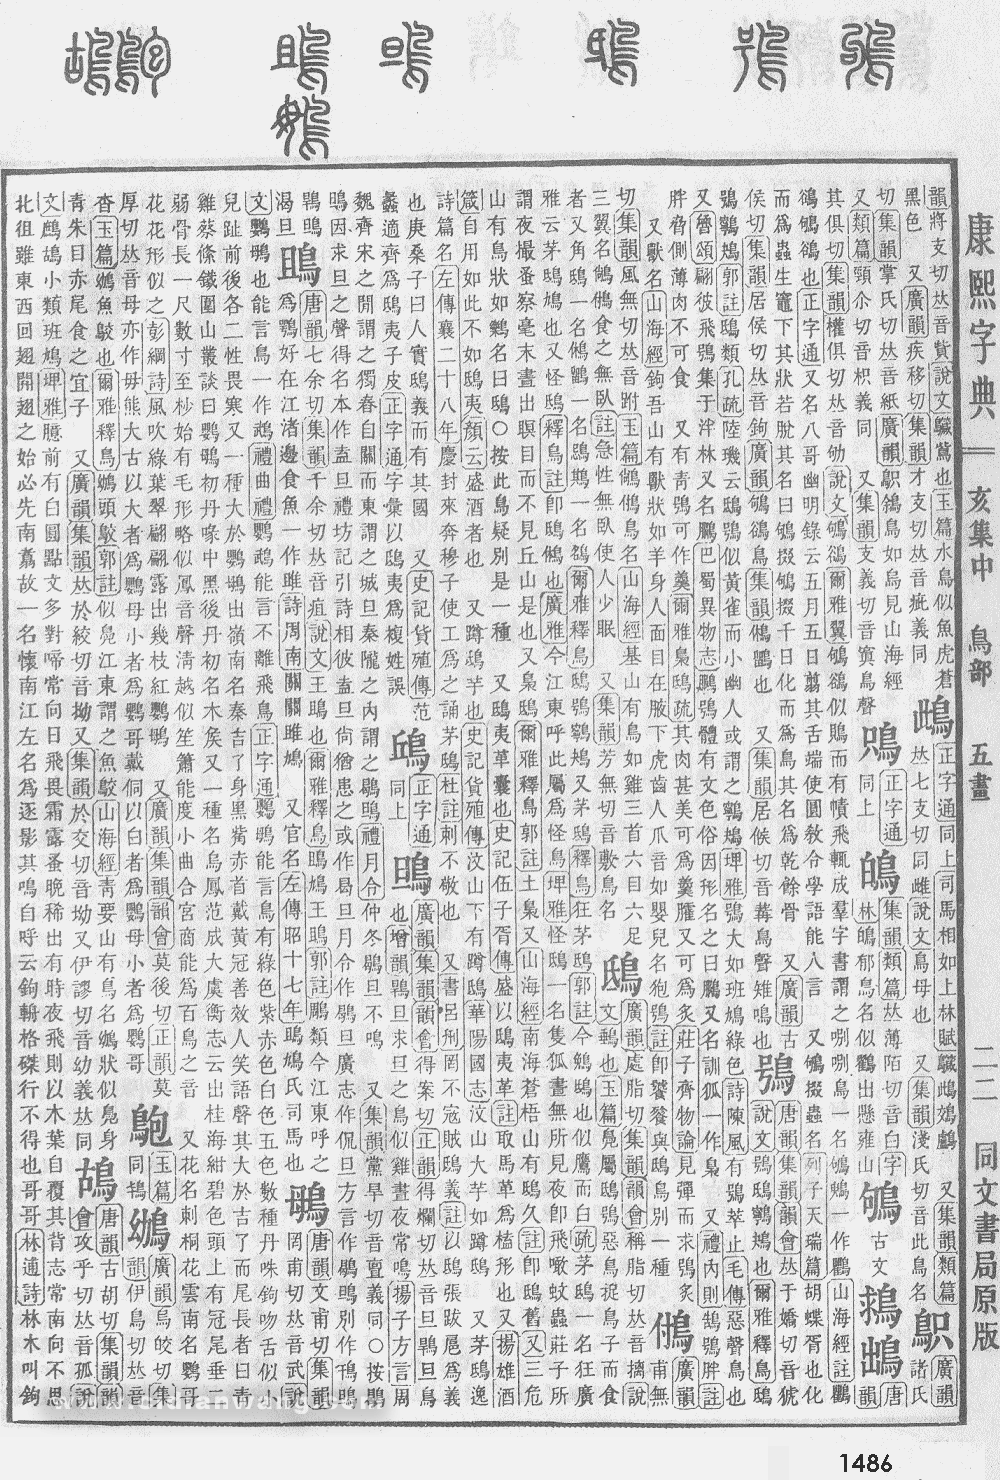 康熙字典掃描版第1486頁